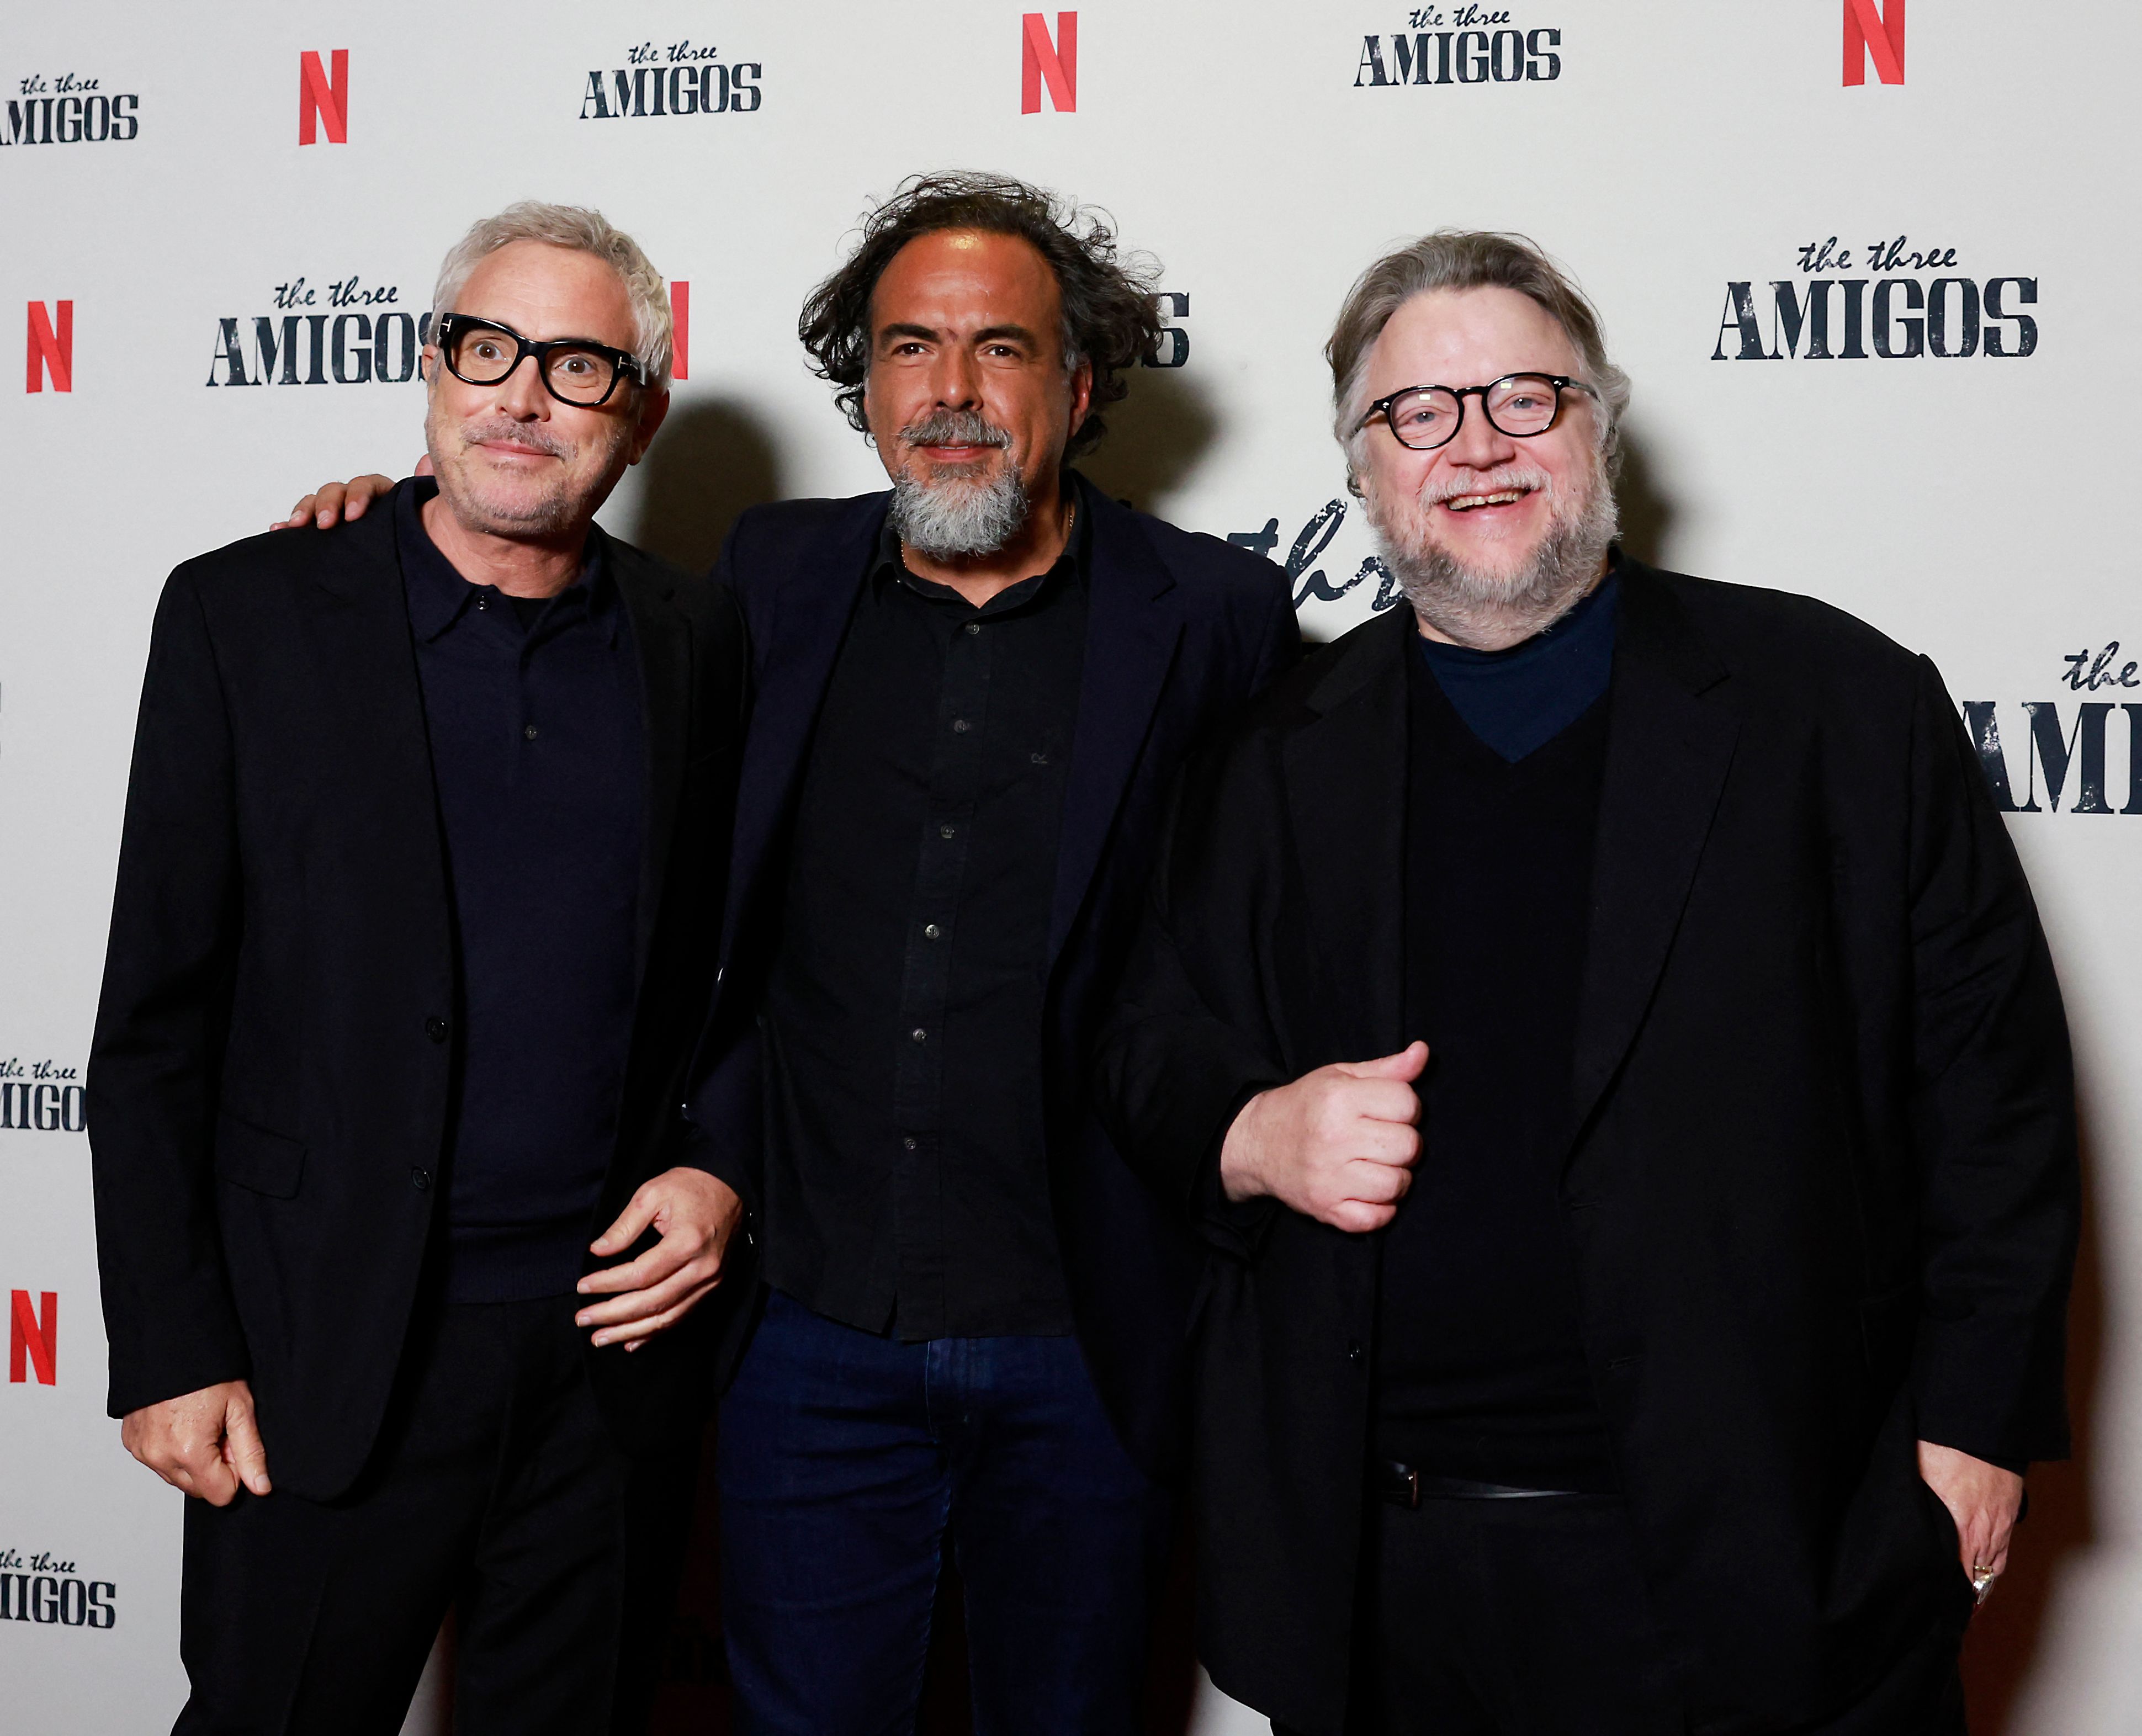 Del Toro, González Iñárritu Cuarón: tres cineastas mexicanos y una amistad clave para lograr el éxito